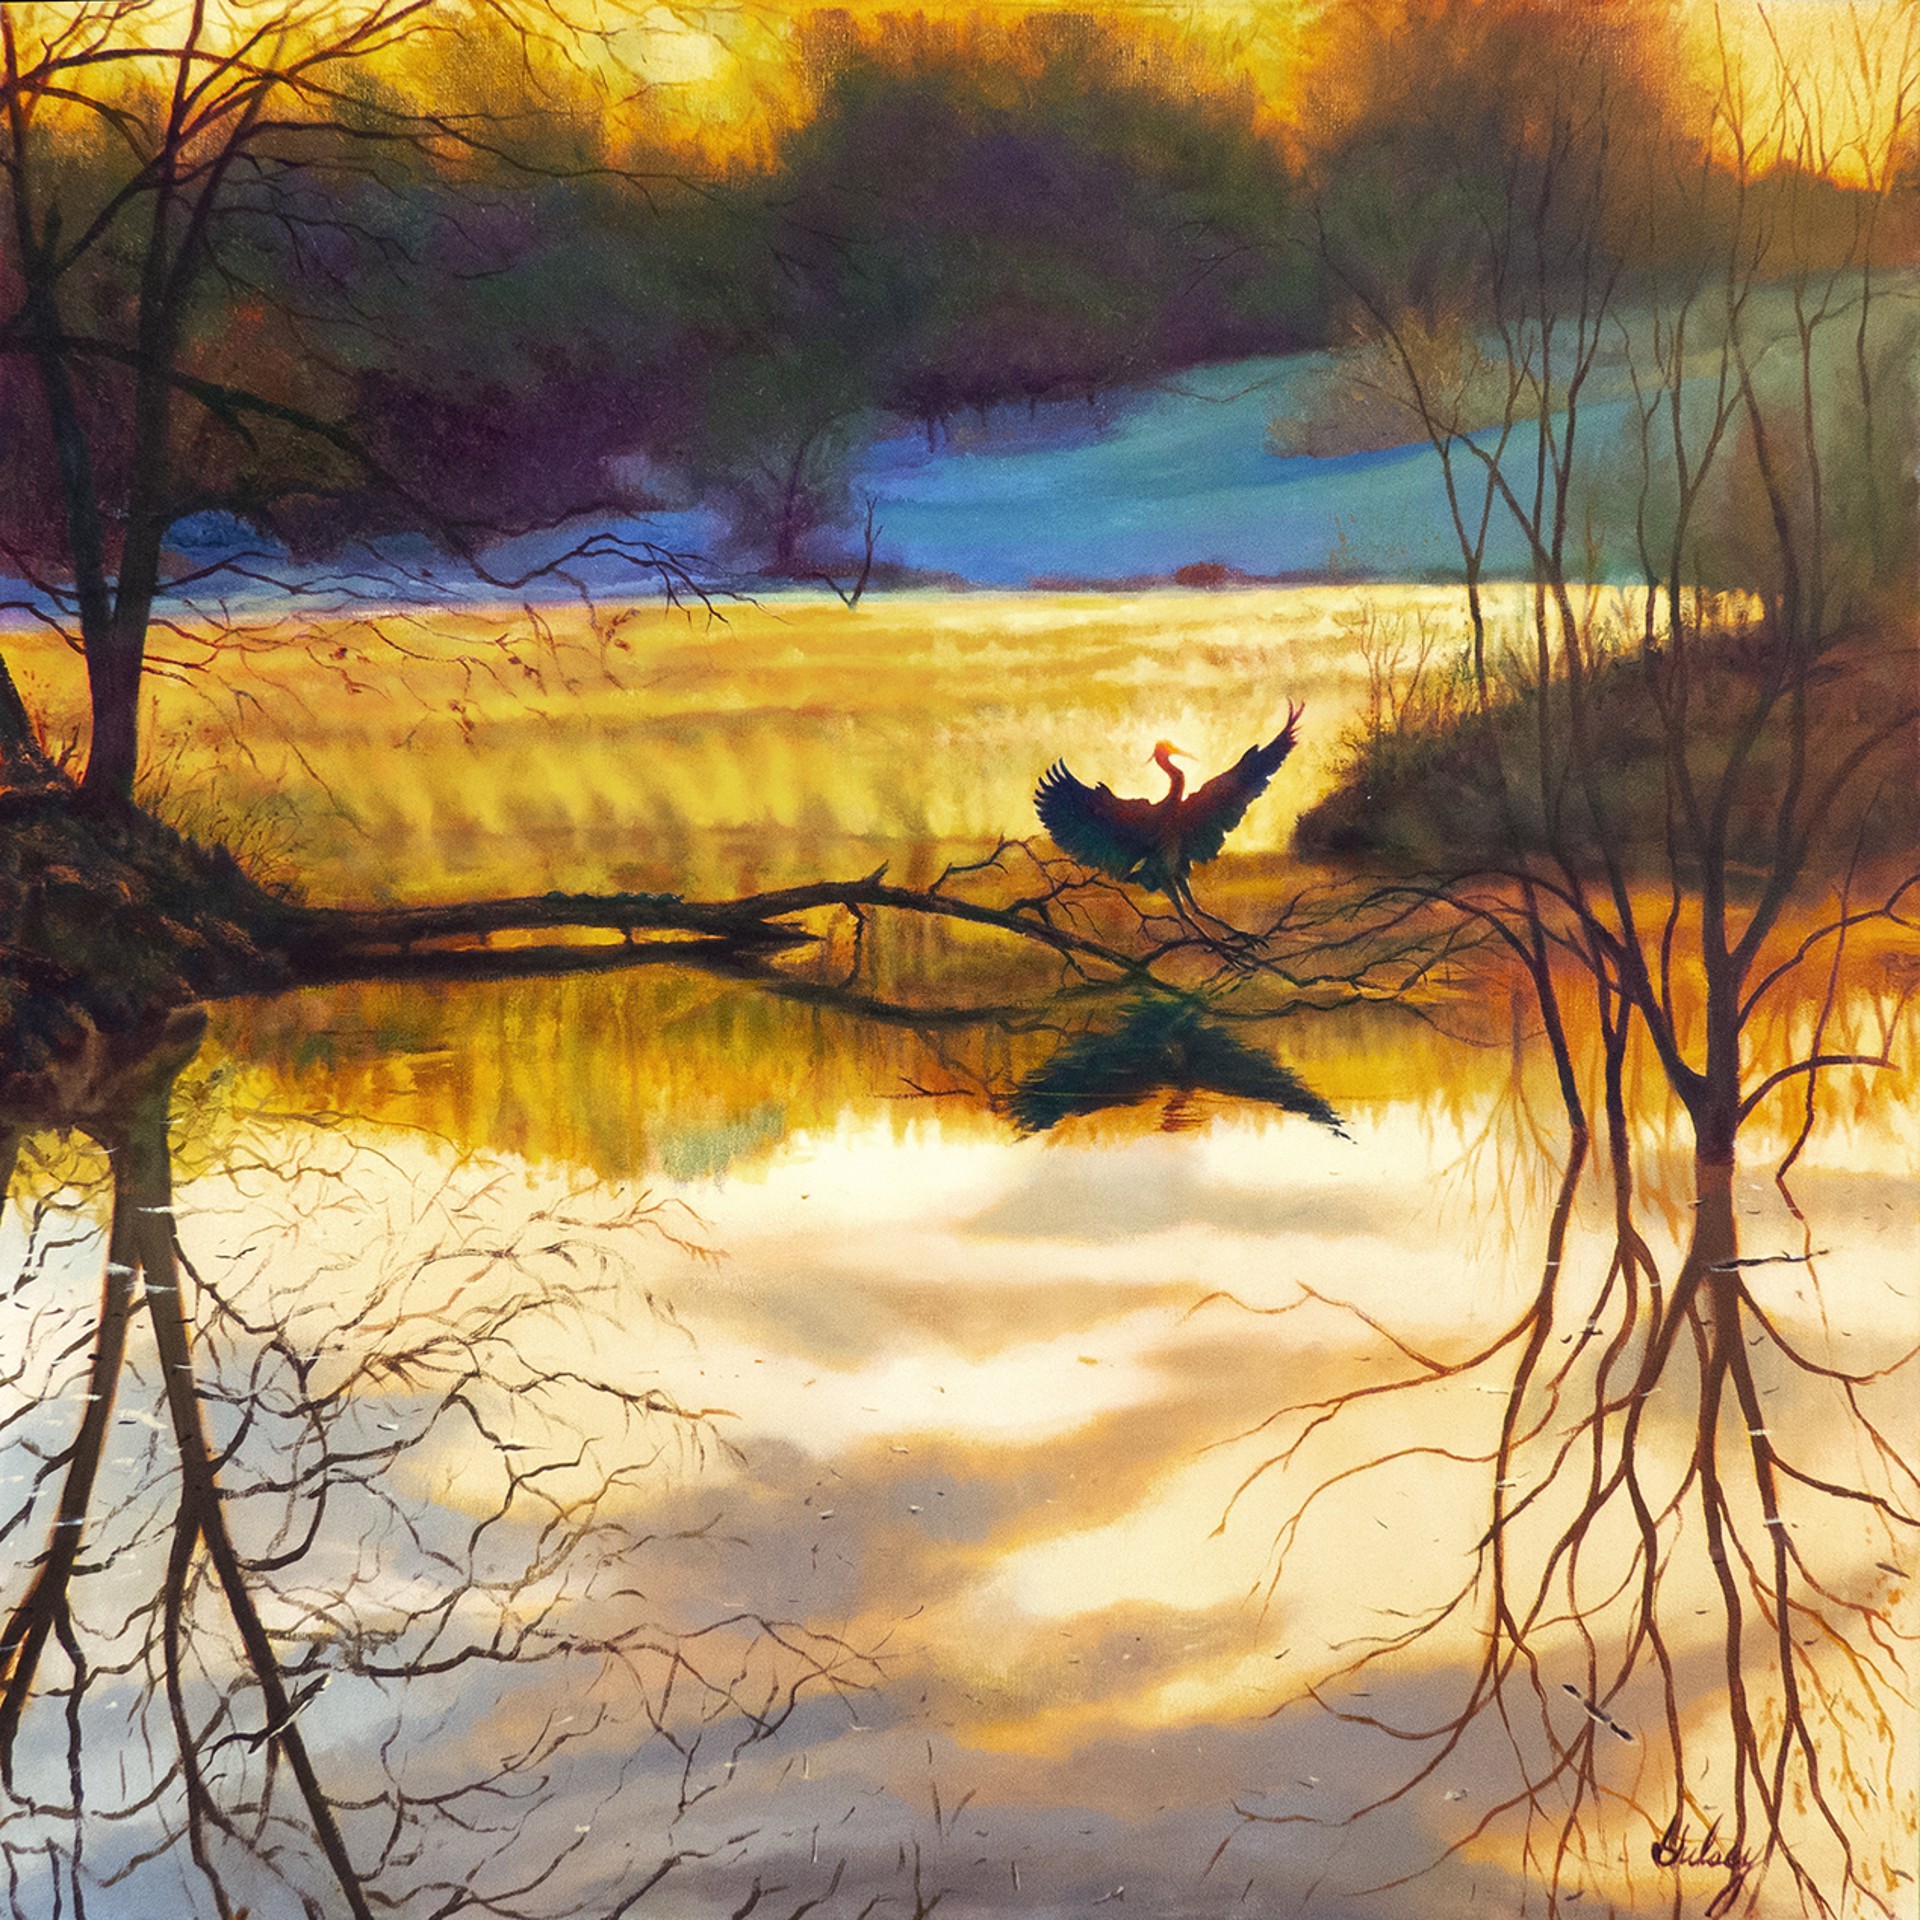 Daybreak on the Pond by John Hulsey